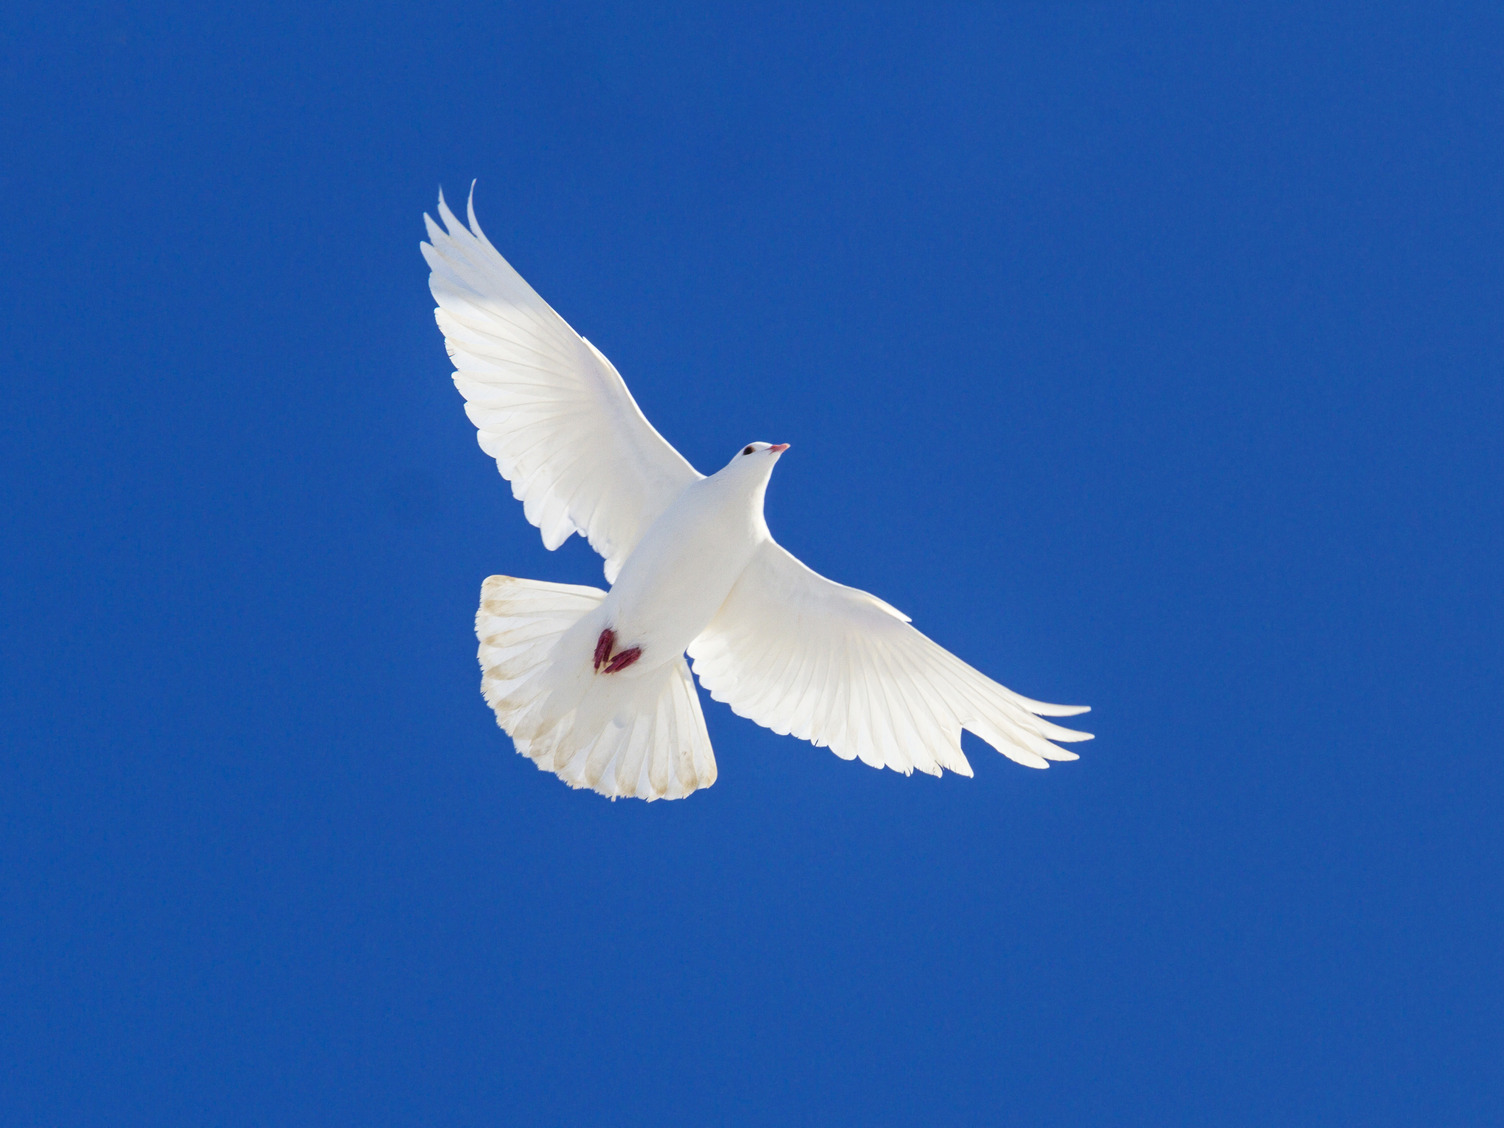 Ein blauer Himmer mit einer fliegenden weißen Taube.